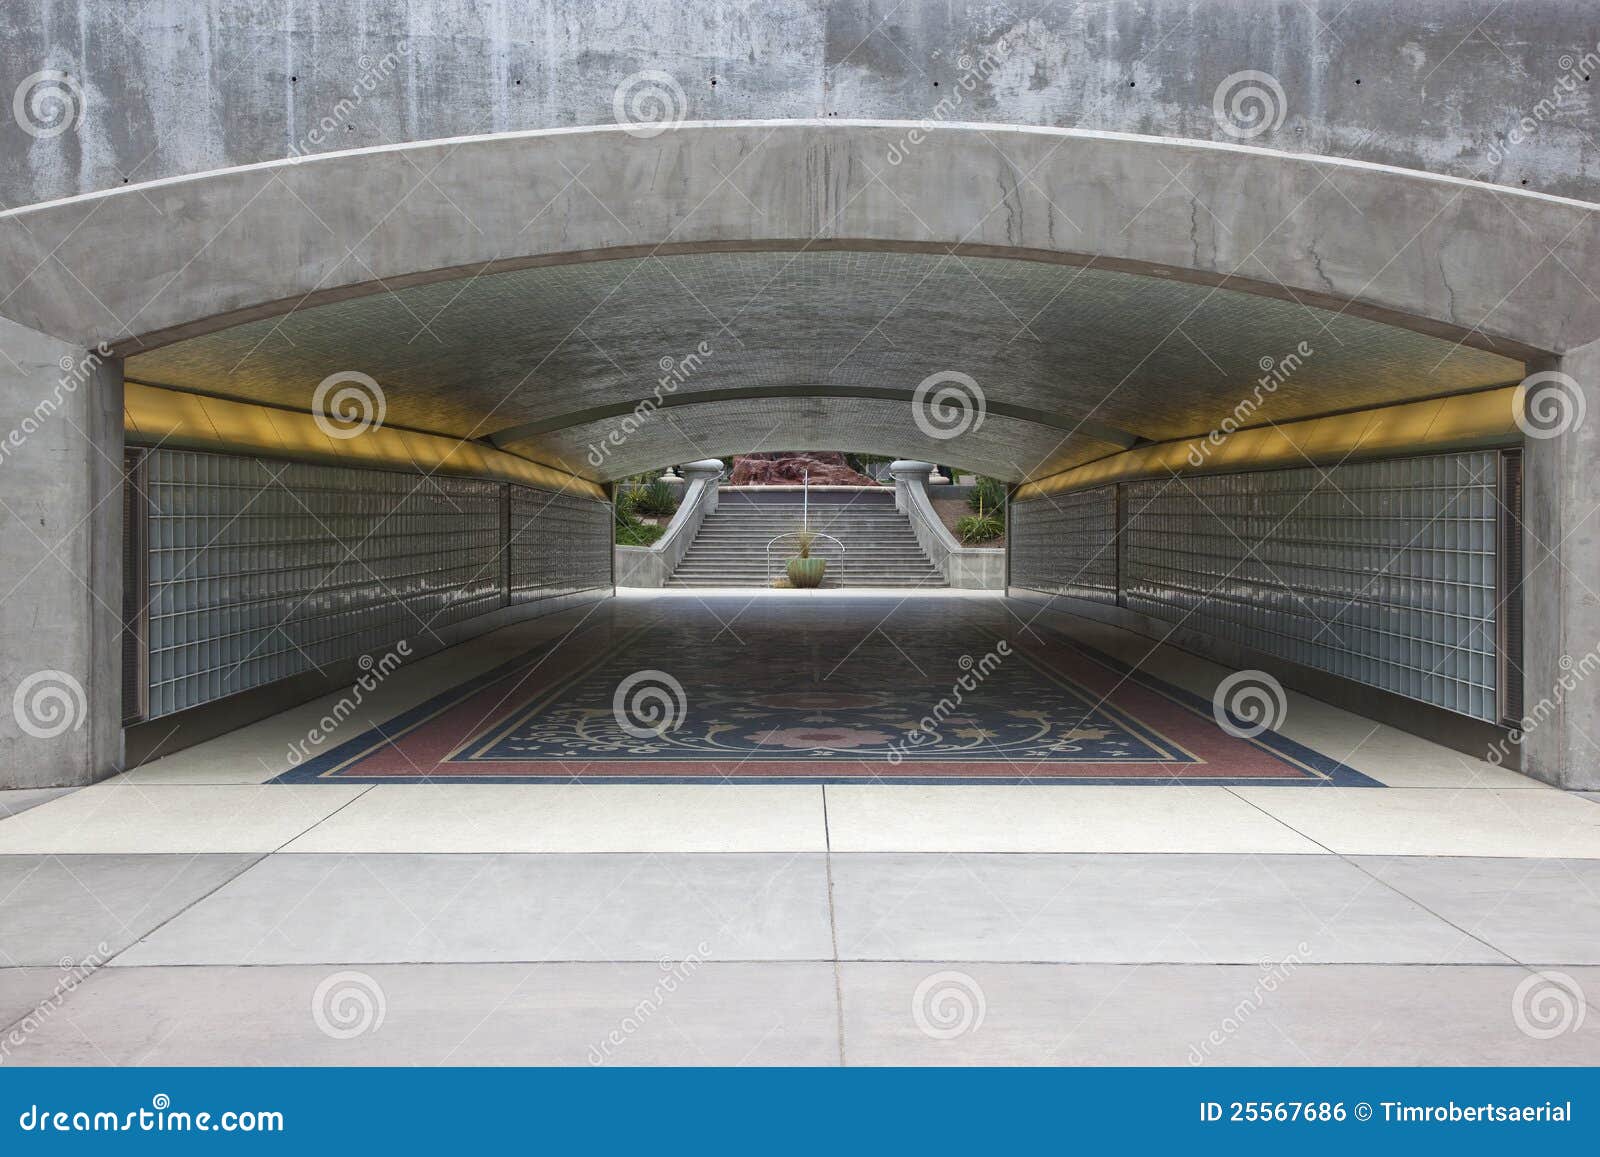 pedestrian underpass